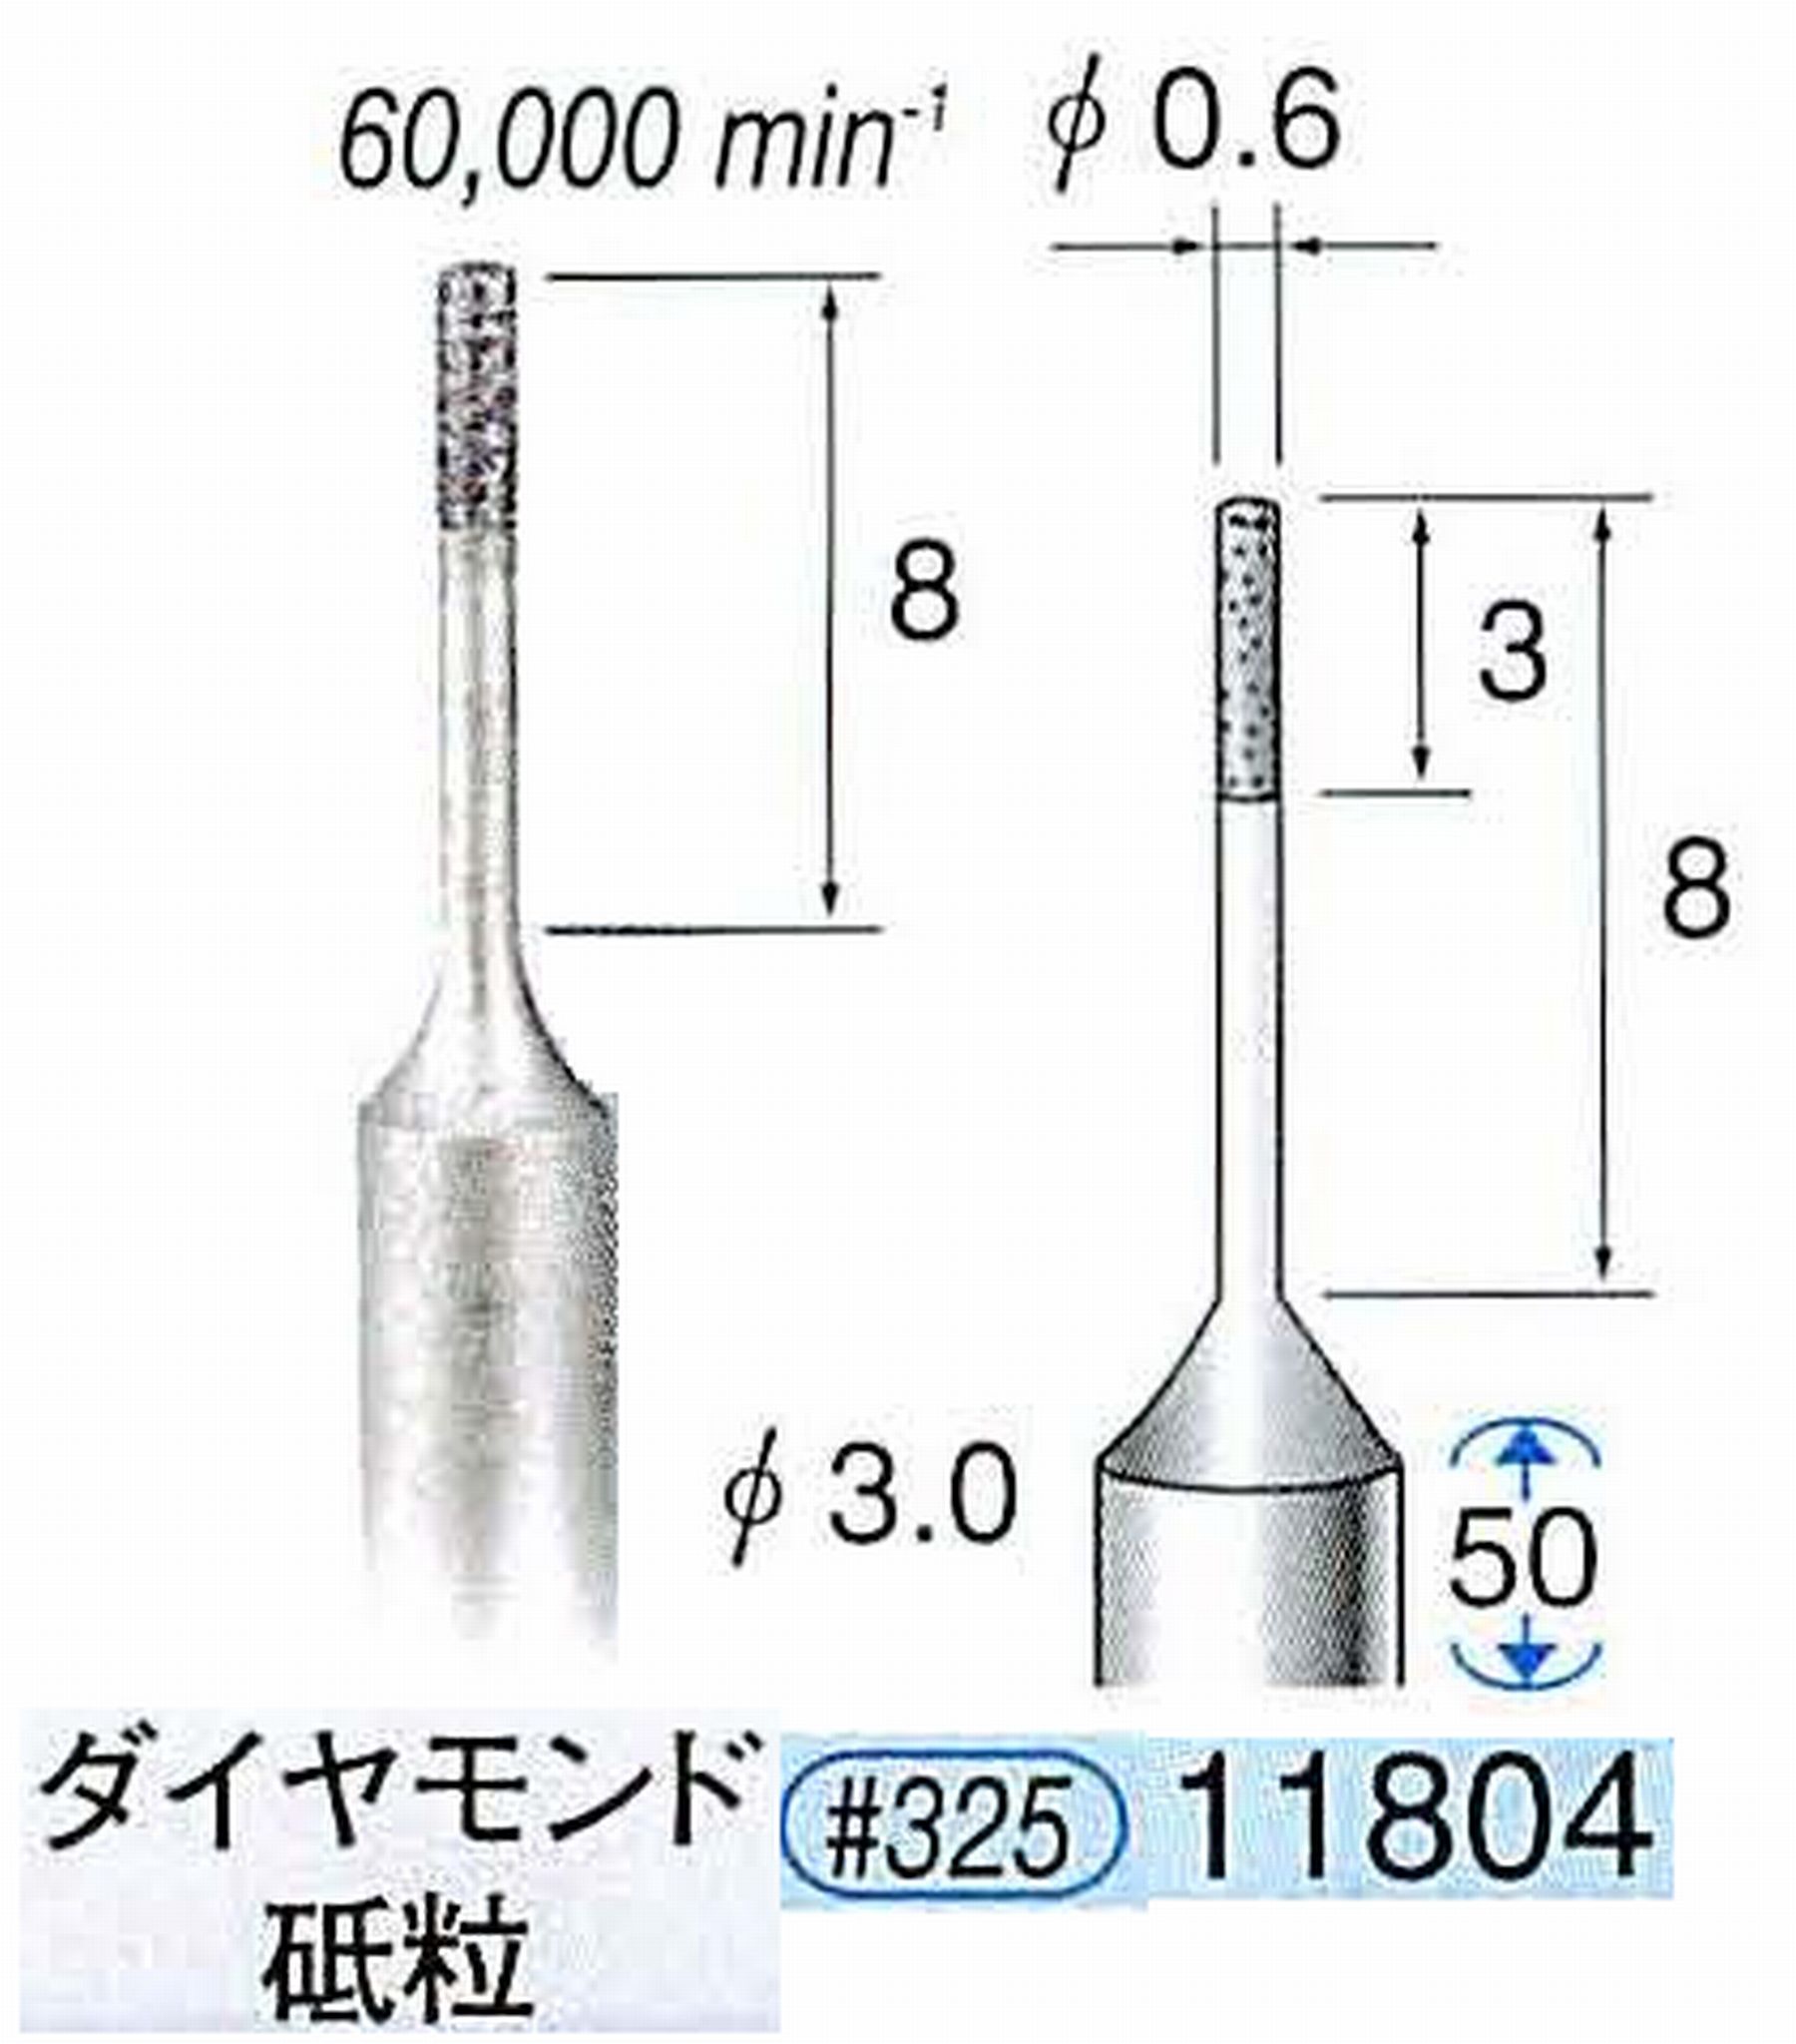 ナカニシ/NAKANISHI SP電着ダイヤモンド ダイヤモンド砥粒 軸径(シャンク)φ3.0mm 11804